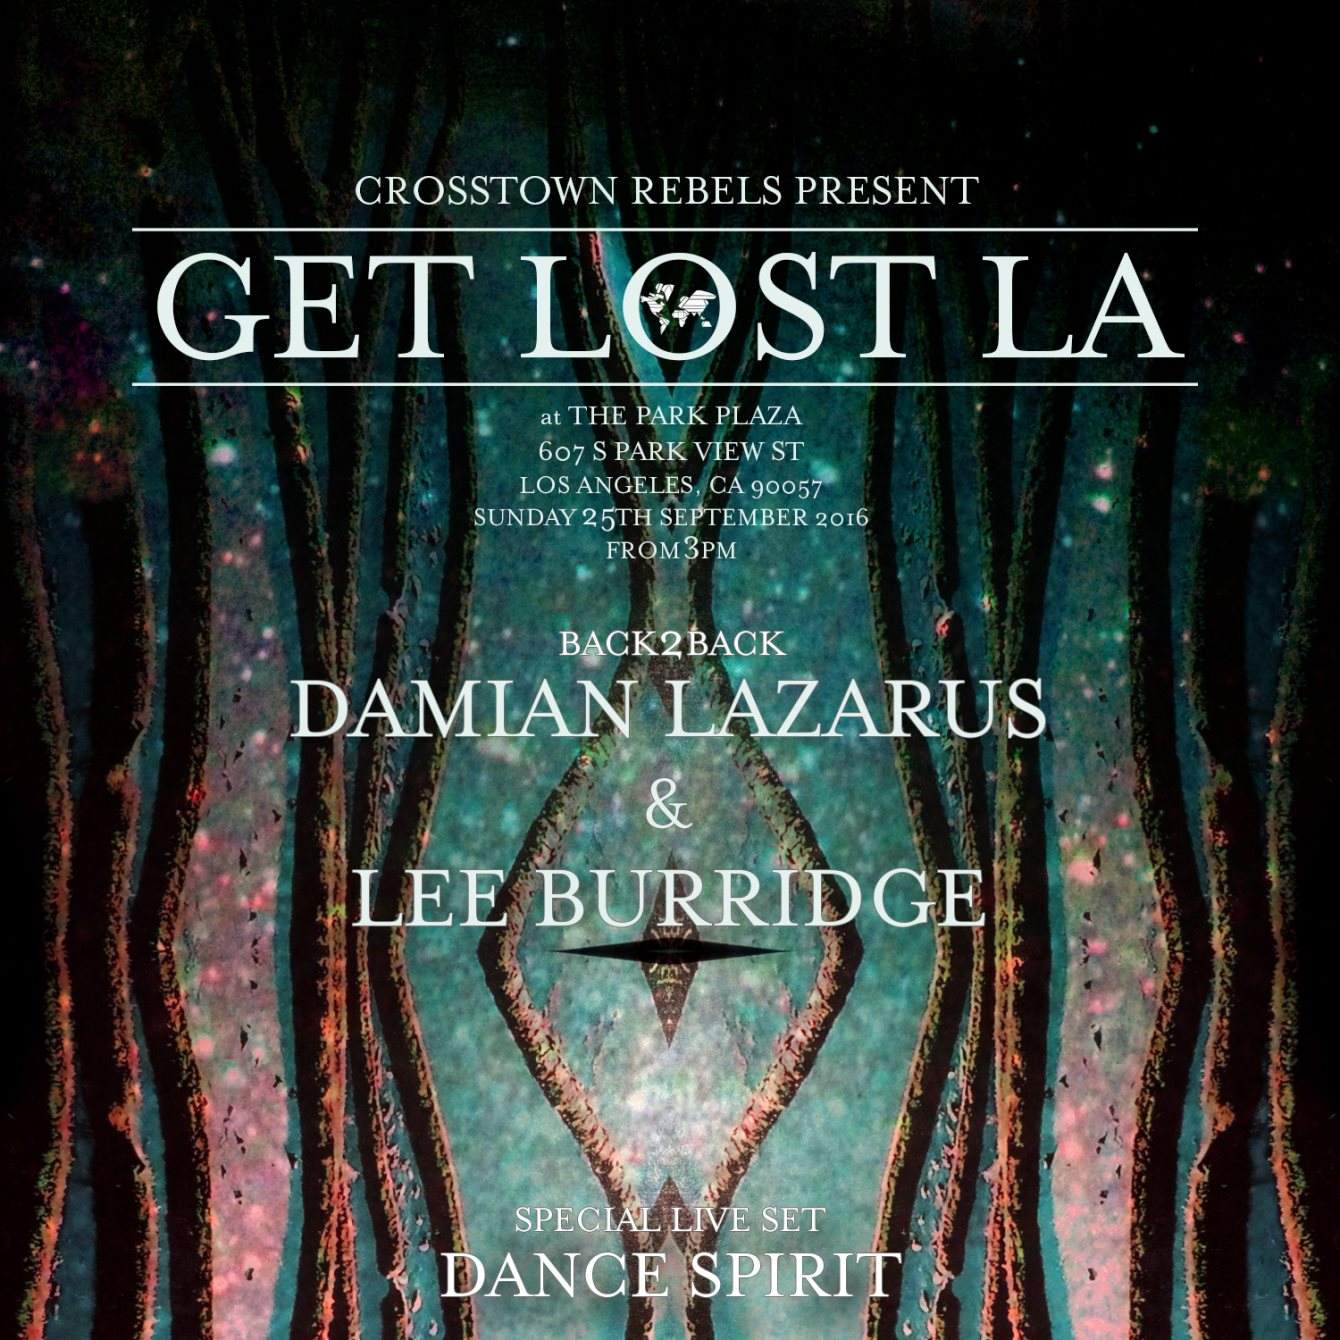 Get Lost LA 2016 - Página frontal